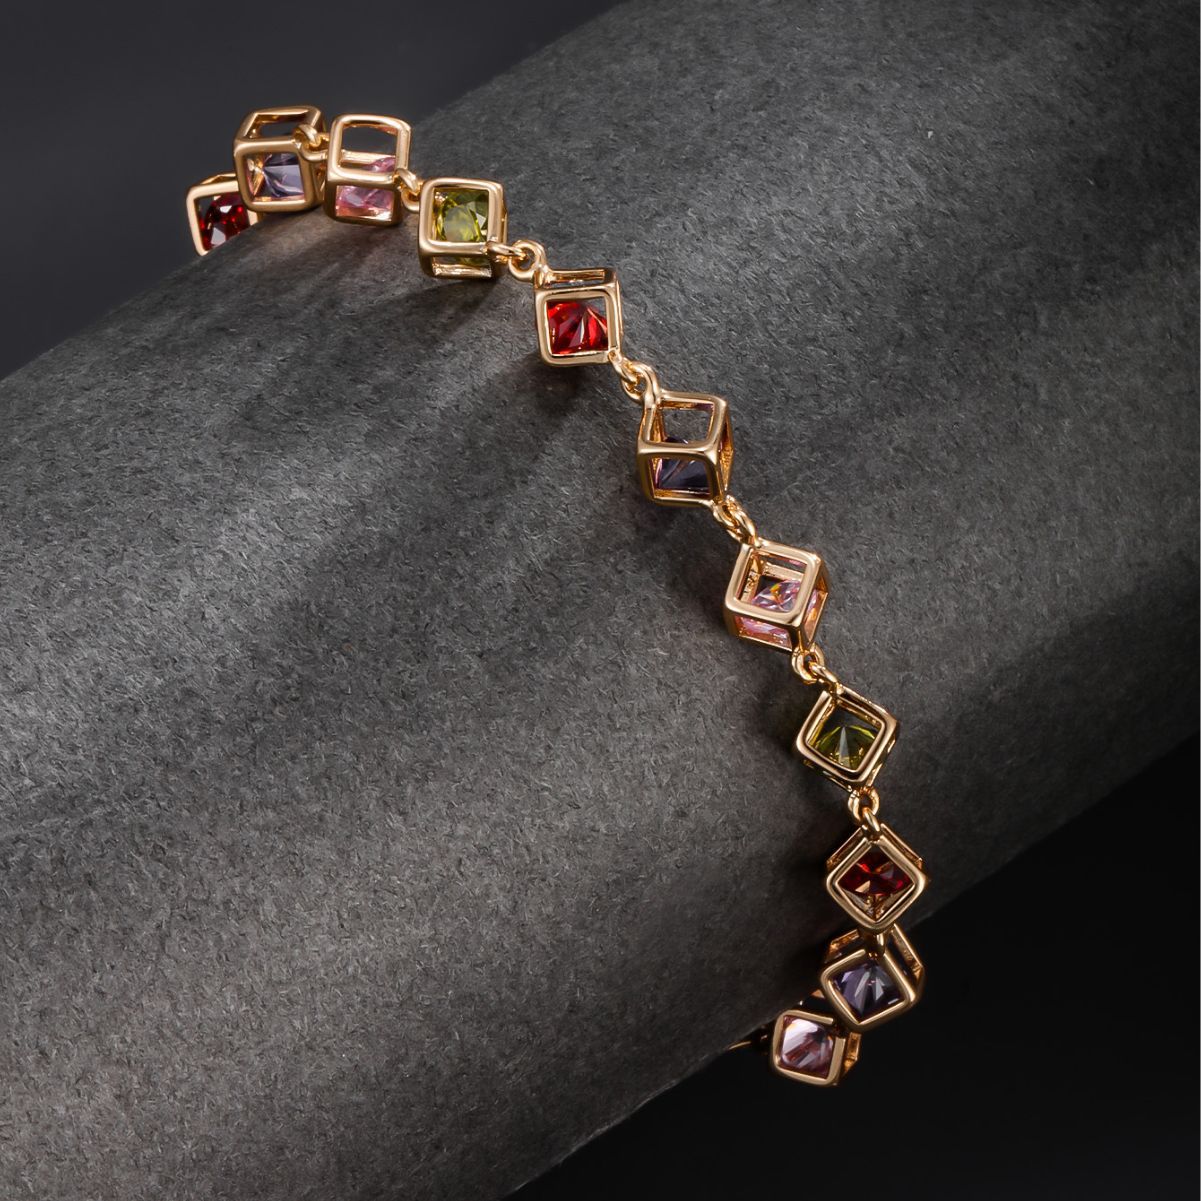 Light Luxury Fashion Colorful Man-made Gemstone Bracelet